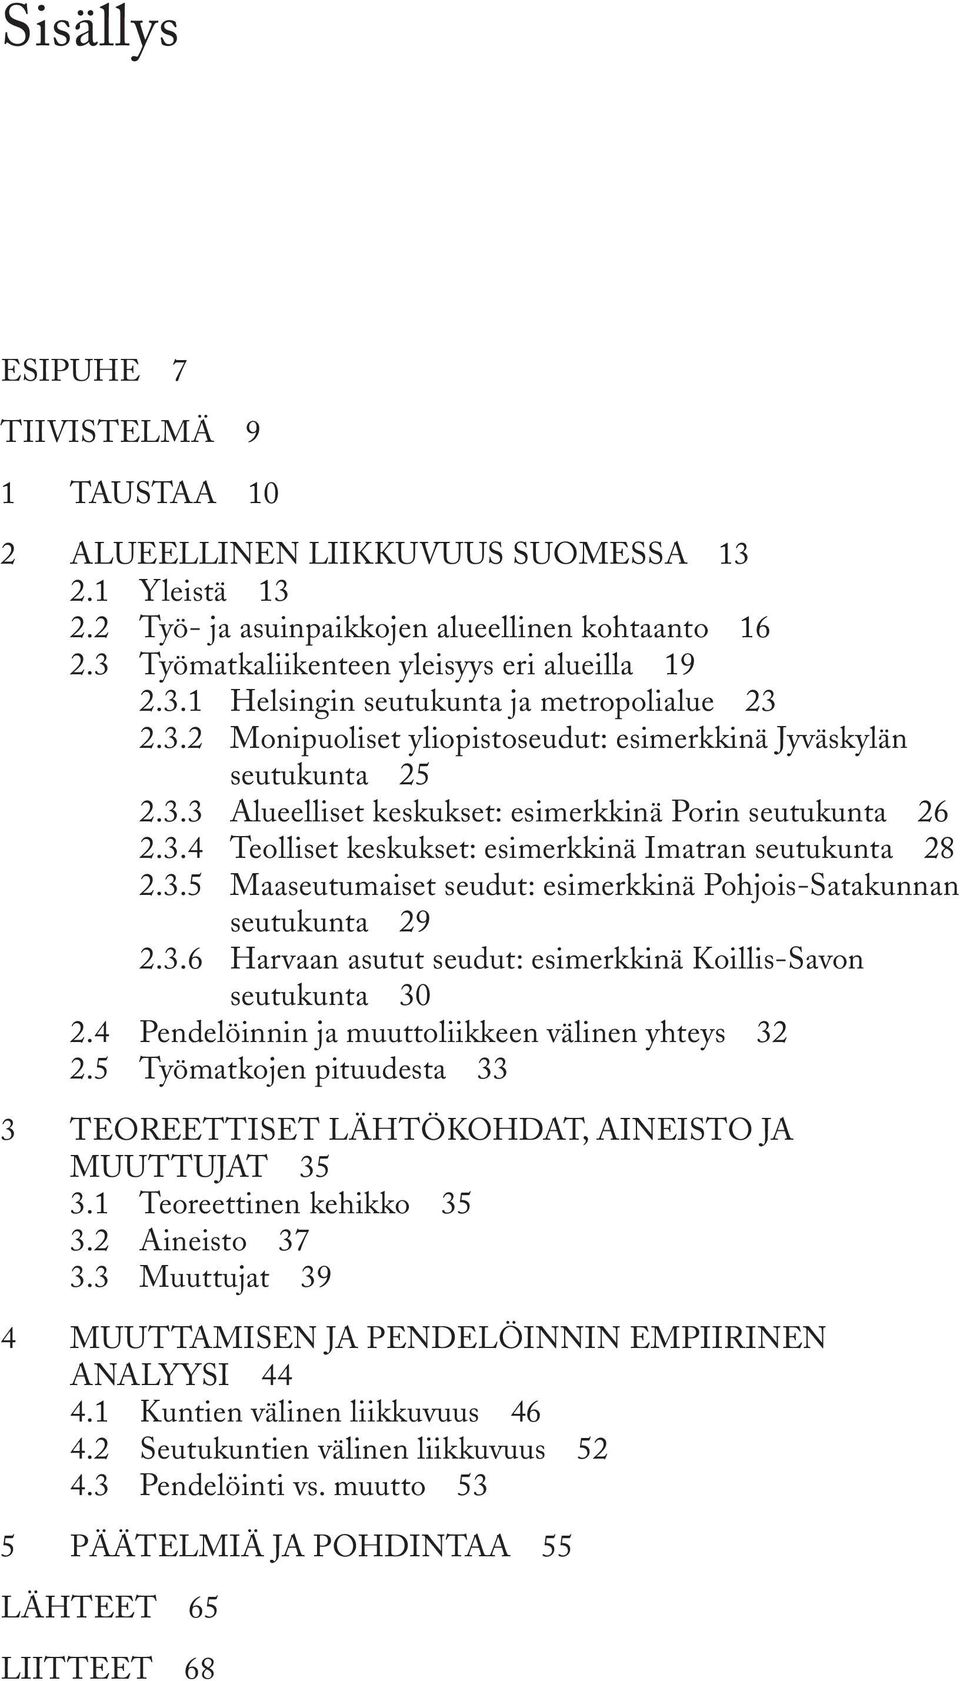 3.5 Maaseutumaiset seudut: esimerkkinä Pohjois-Satakunnan seutukunta 29 2.3.6 Harvaan asutut seudut: esimerkkinä Koillis-Savon seutukunta 30 2.4 Pendelöinnin ja muuttoliikkeen välinen yhteys 32 2.